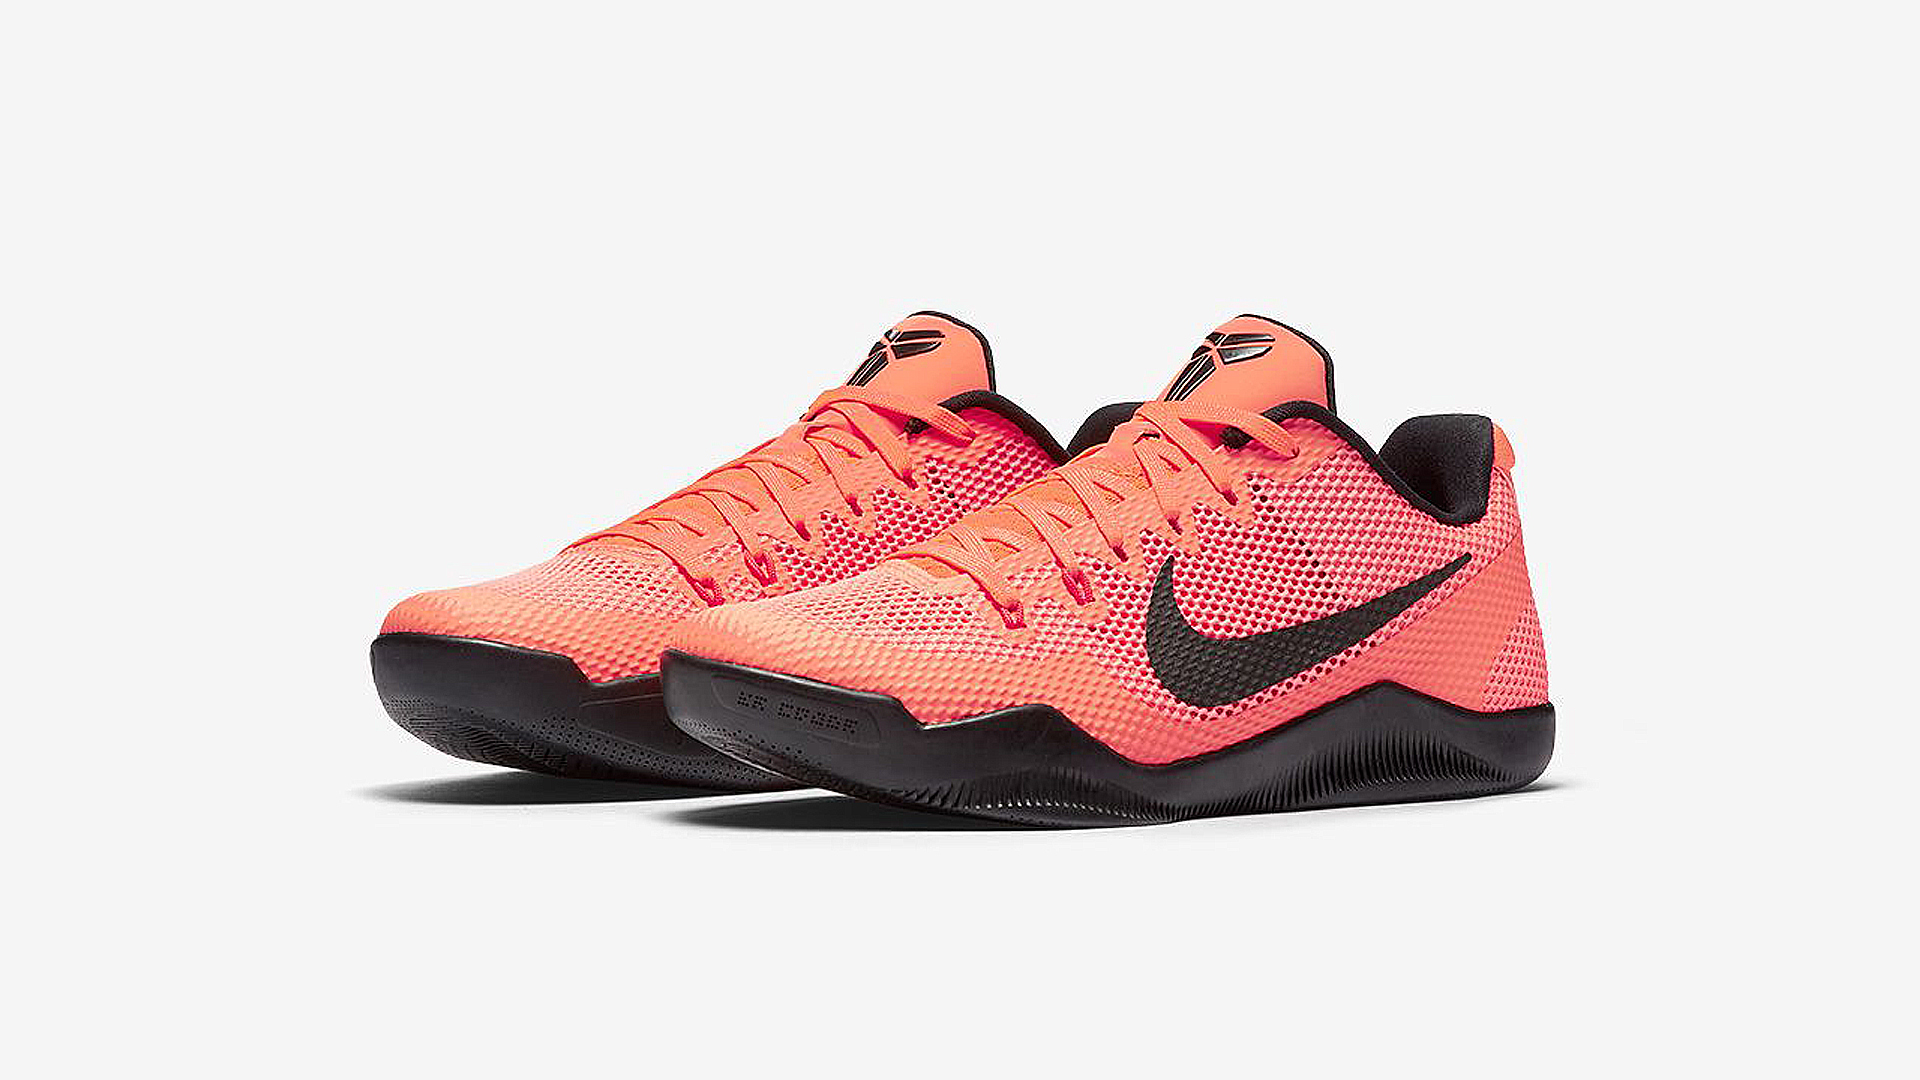 The Nike Kobe 11 'Bright Mango' is 